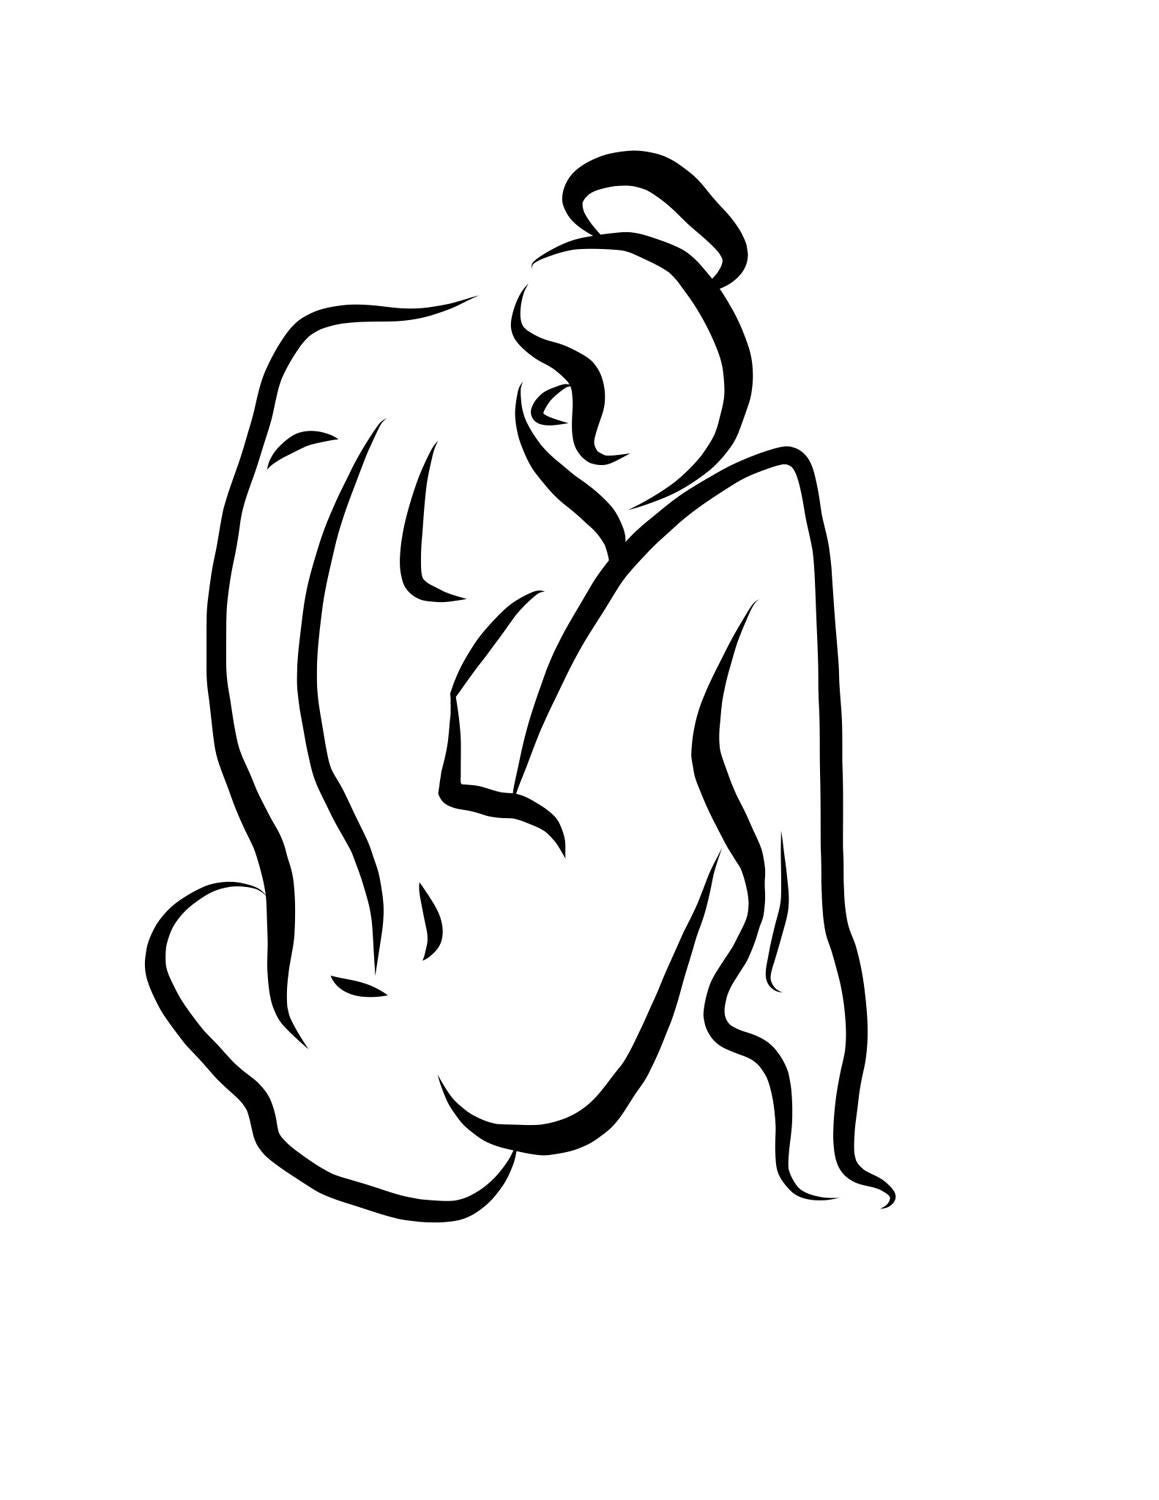 Michael Binkley Nude Print - Haiku #15, 1/50 - Digital Vector Drawing Seated Female Nude Woman Figure Behind